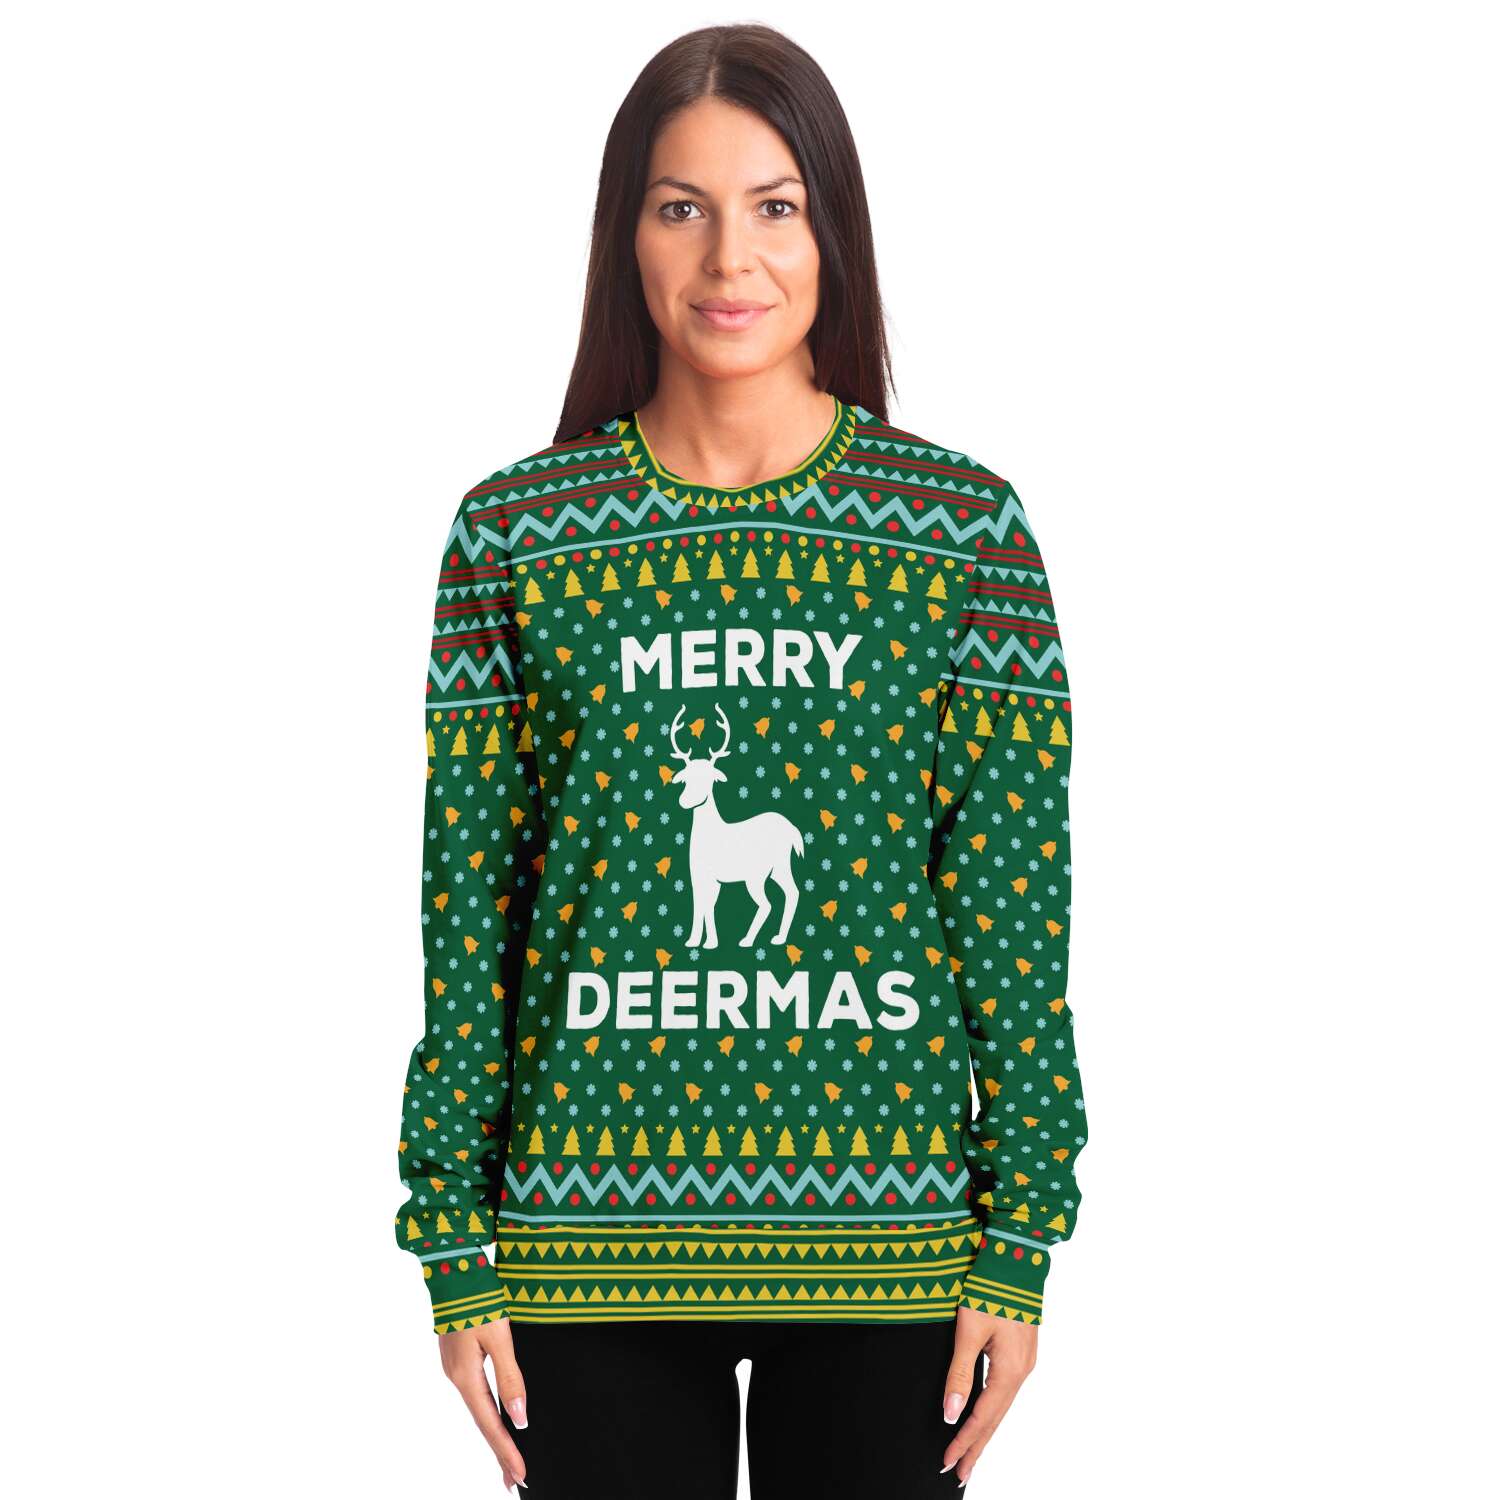 Merry Deermas Sweatshirt | Unisex Ugly Christmas Sweater, Xmas Sweater, Holiday Sweater, Festive Sweater, Funny Sweater, Funny Party Shirt